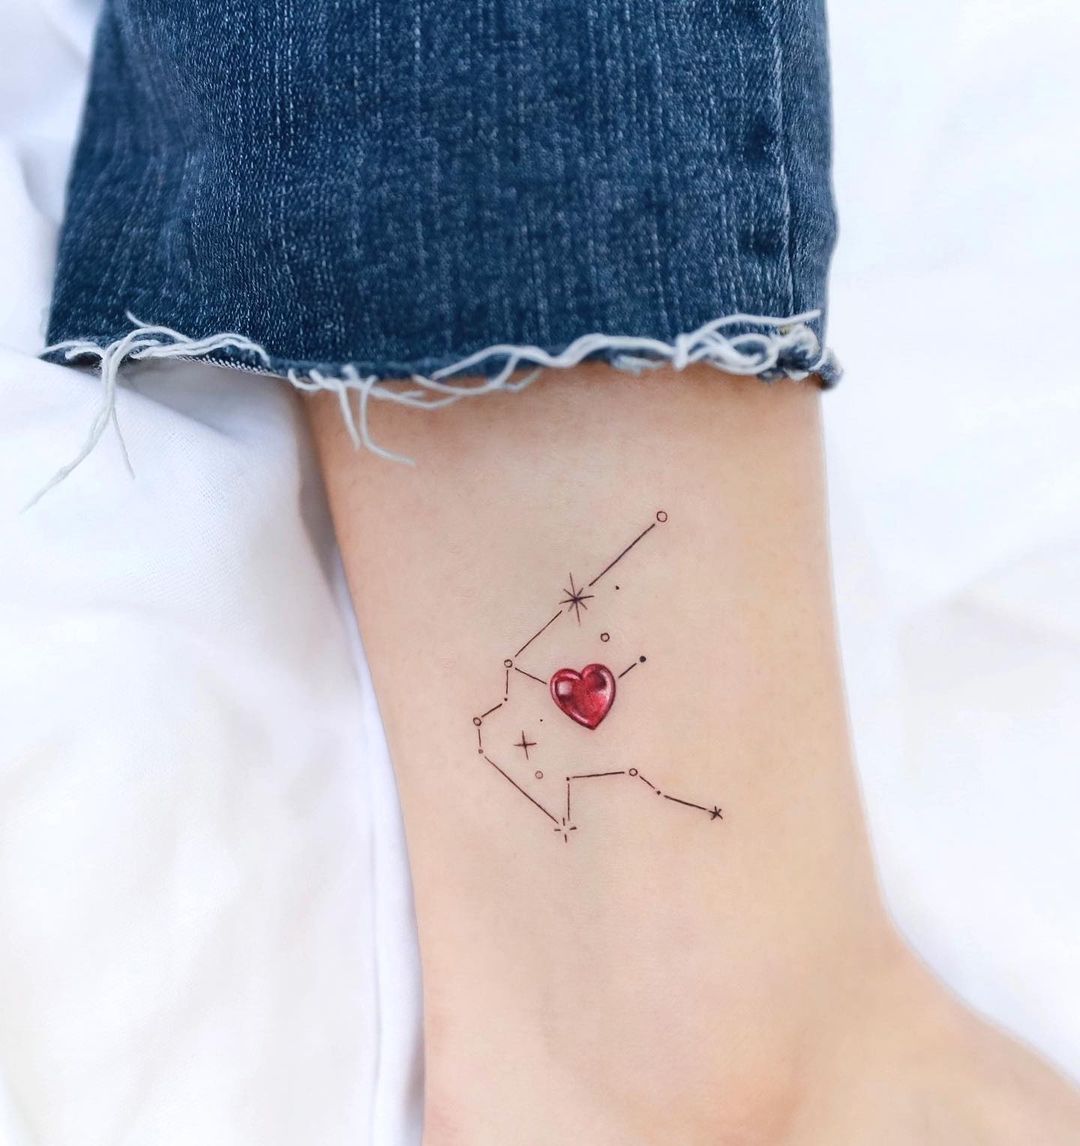 Aquarius Constellation Design With Heart Symbol